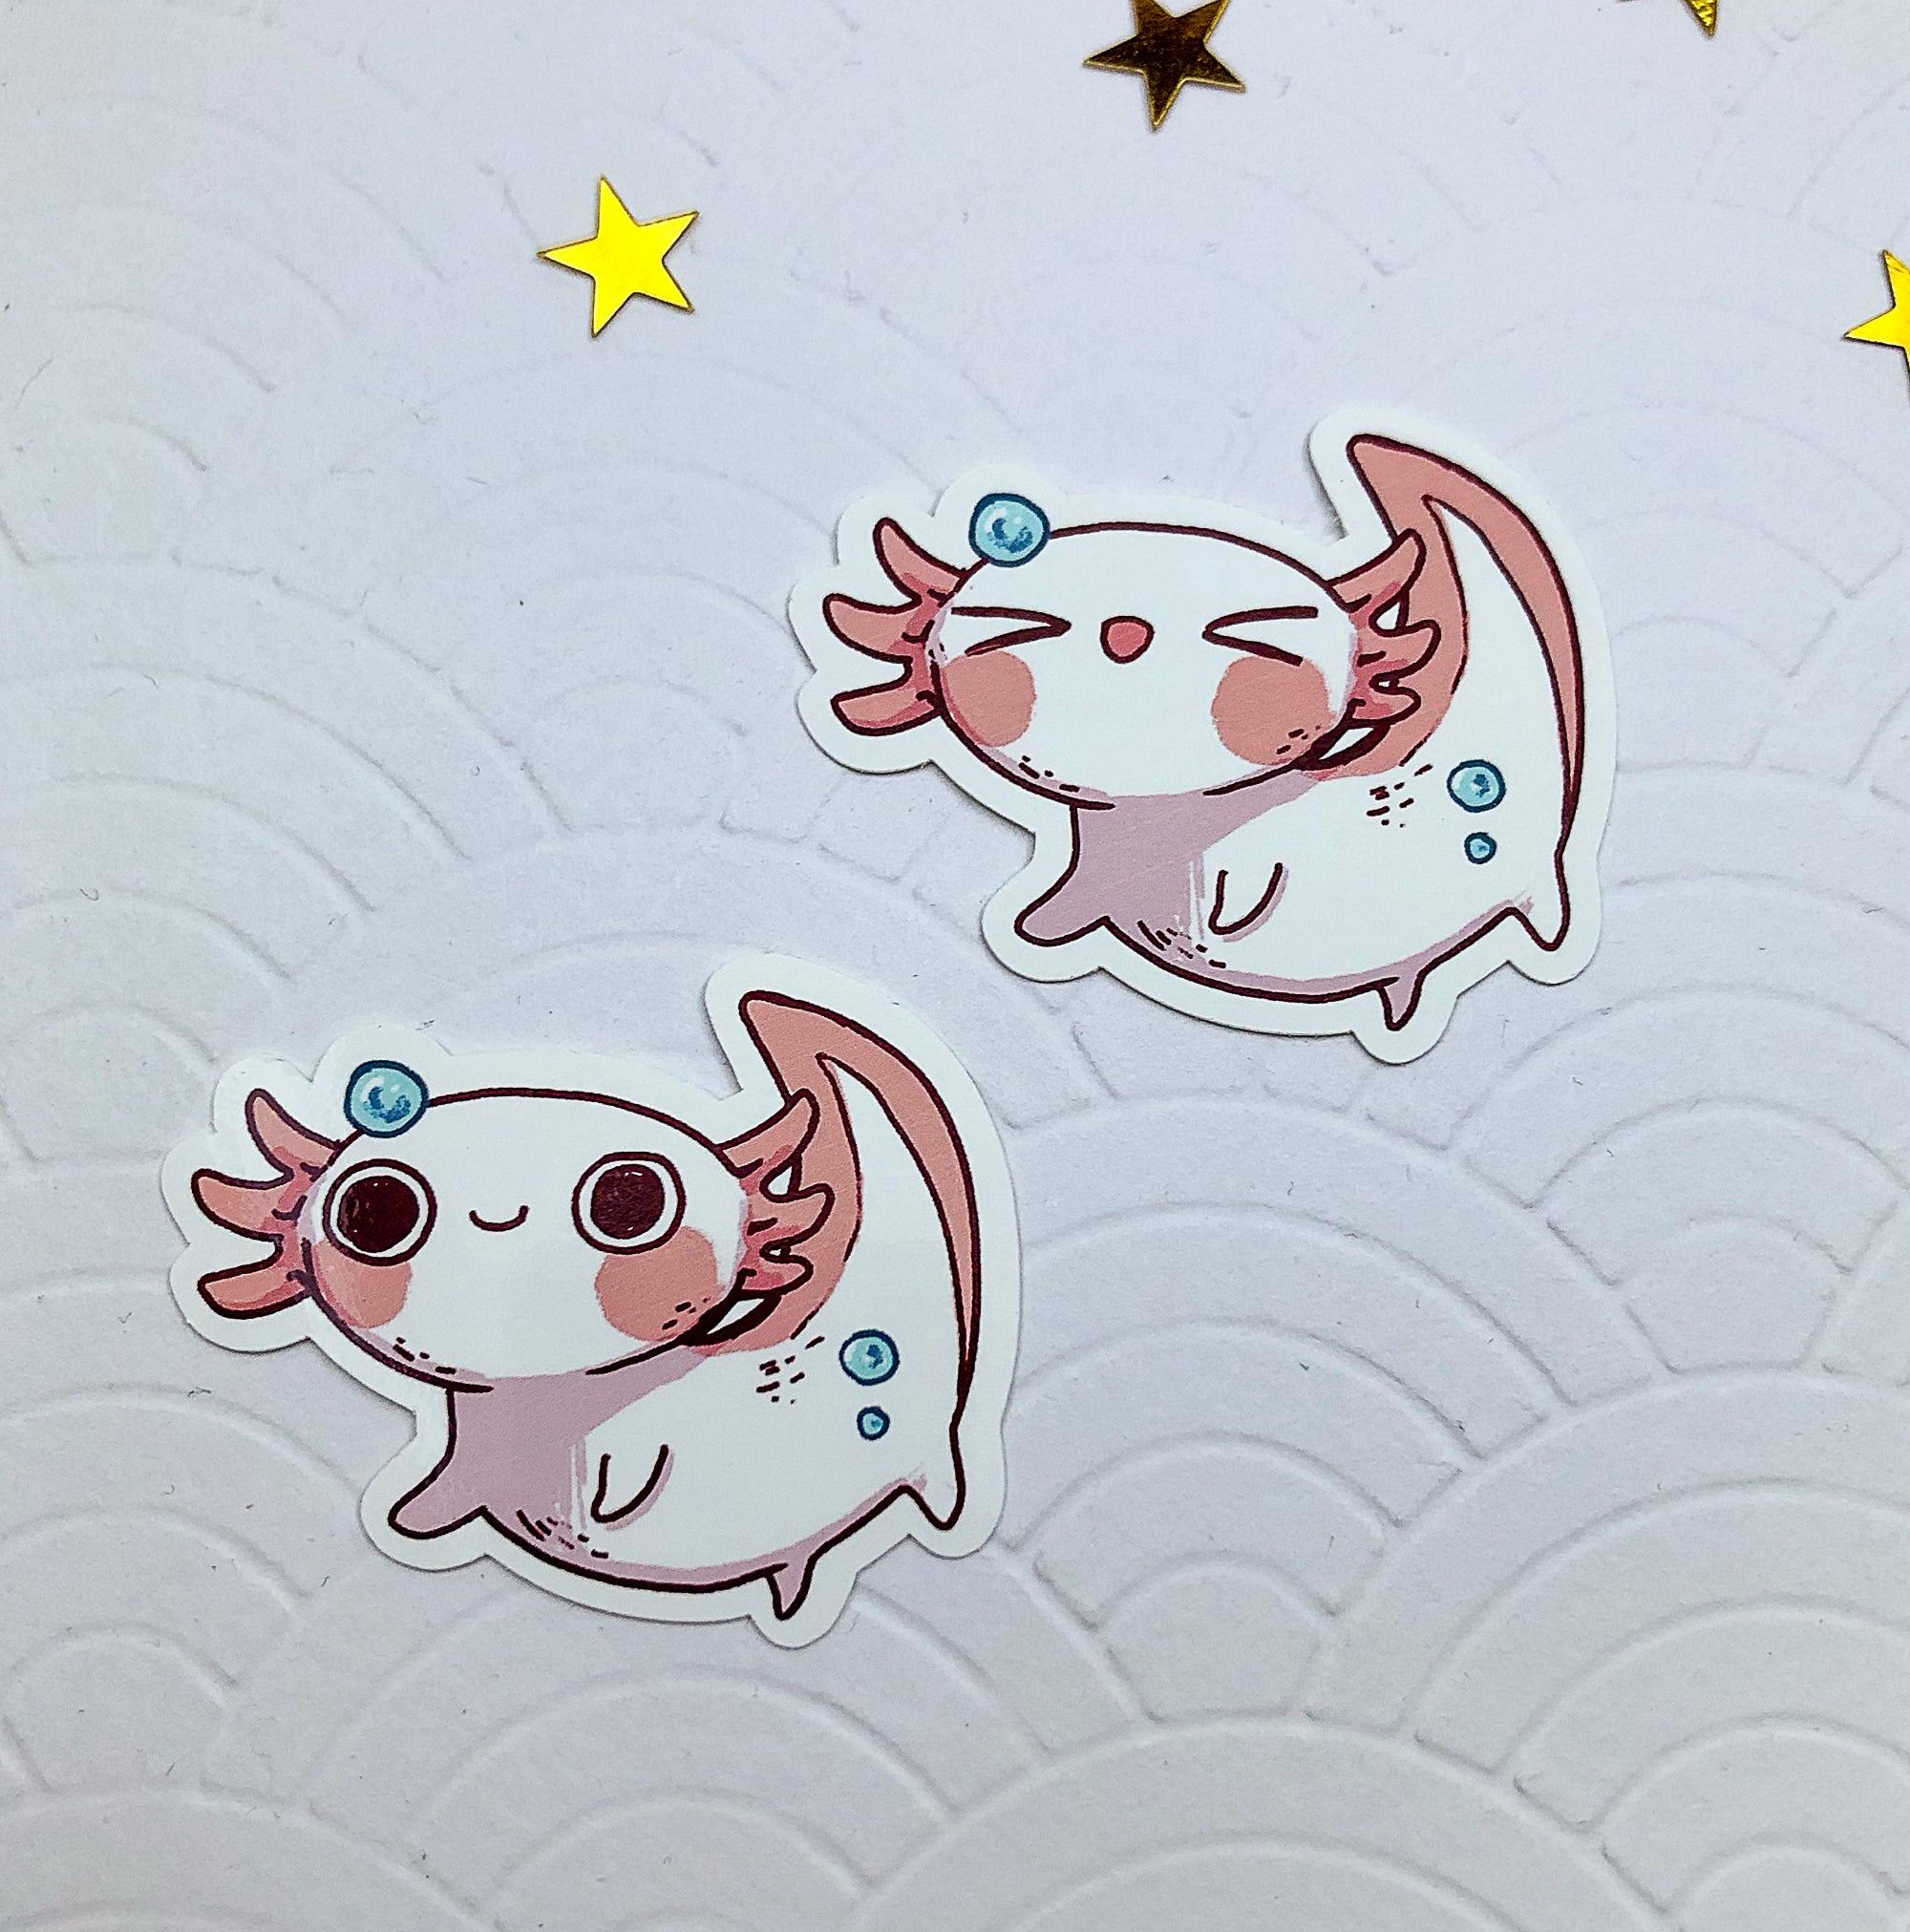 Axolotl | Stickers - Aurigae Art &Illustration